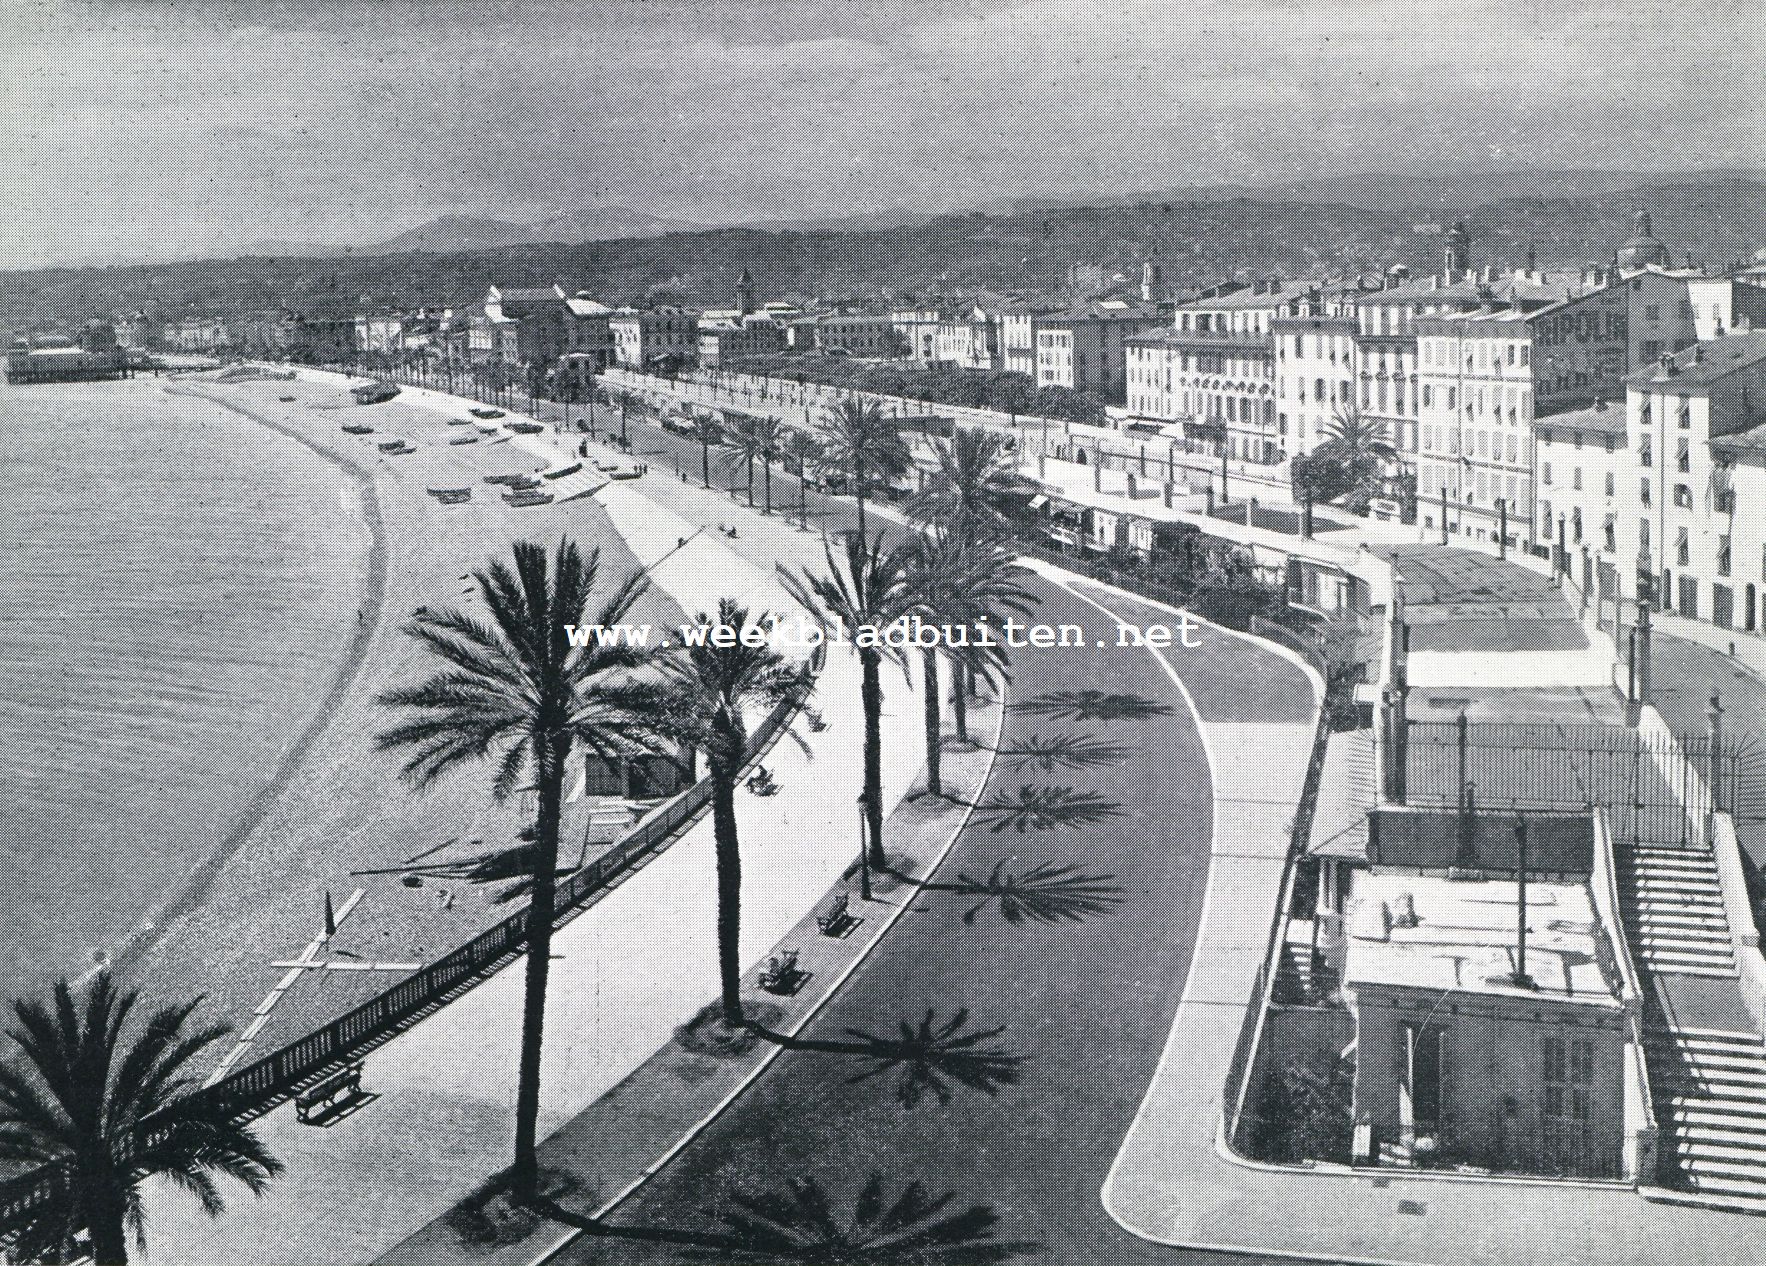 Oude steden aan de Cte d'Azur. De Promenade te Nice, de zeeboelevard waar de vreemdelingen, uit alle oorden der wereld hierheen getrokken, elkaar bewonderen